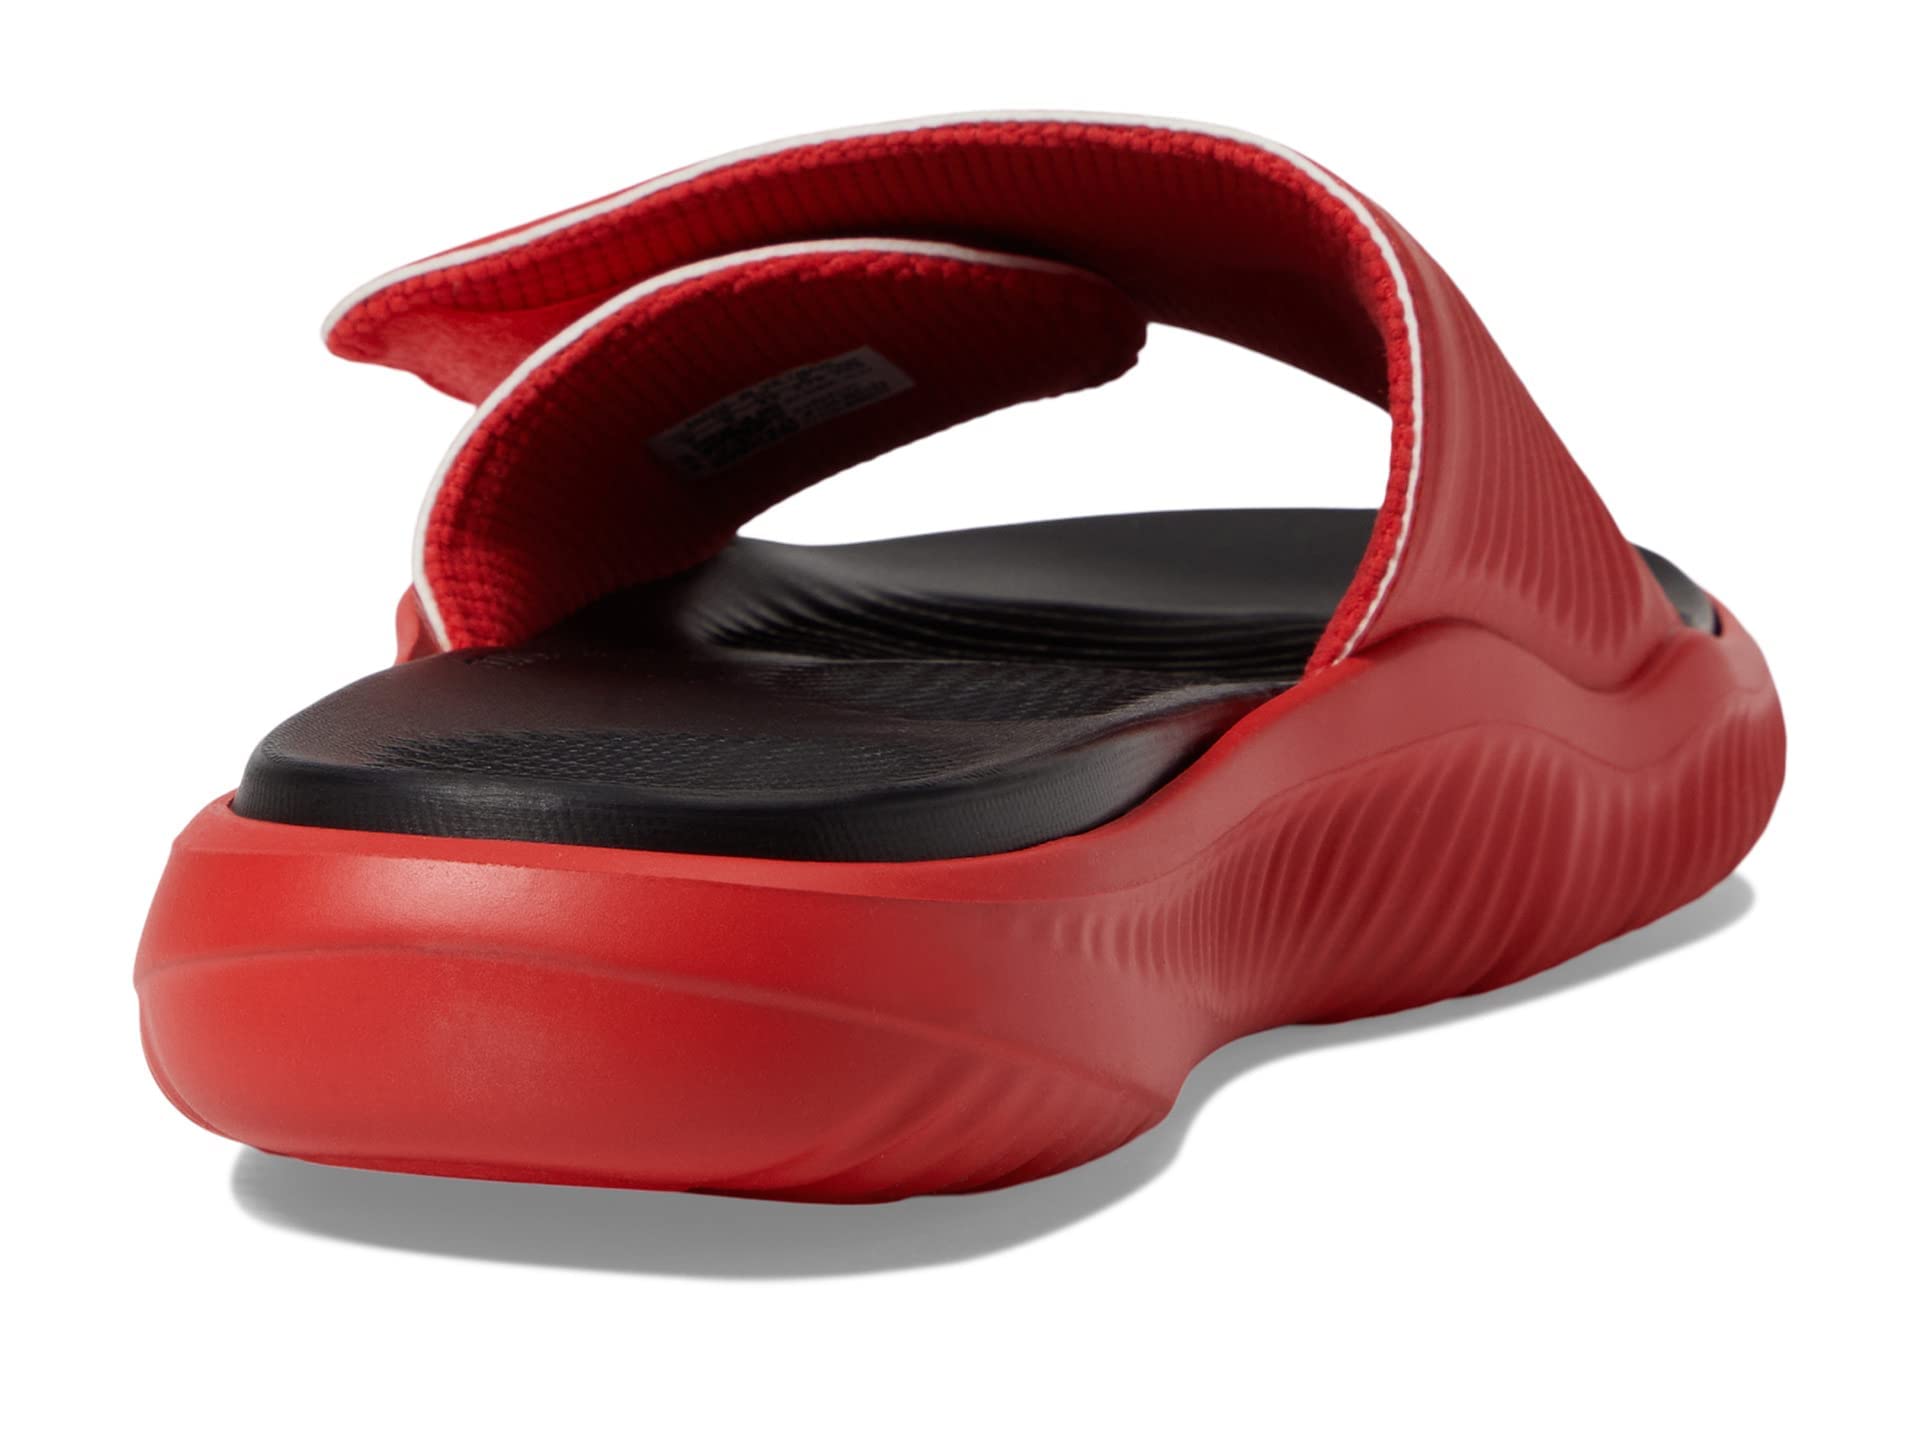 adidas Unisex Alphabounce 2.0 Slides Sandal, Vivid Red/White/Black, 9 US Men